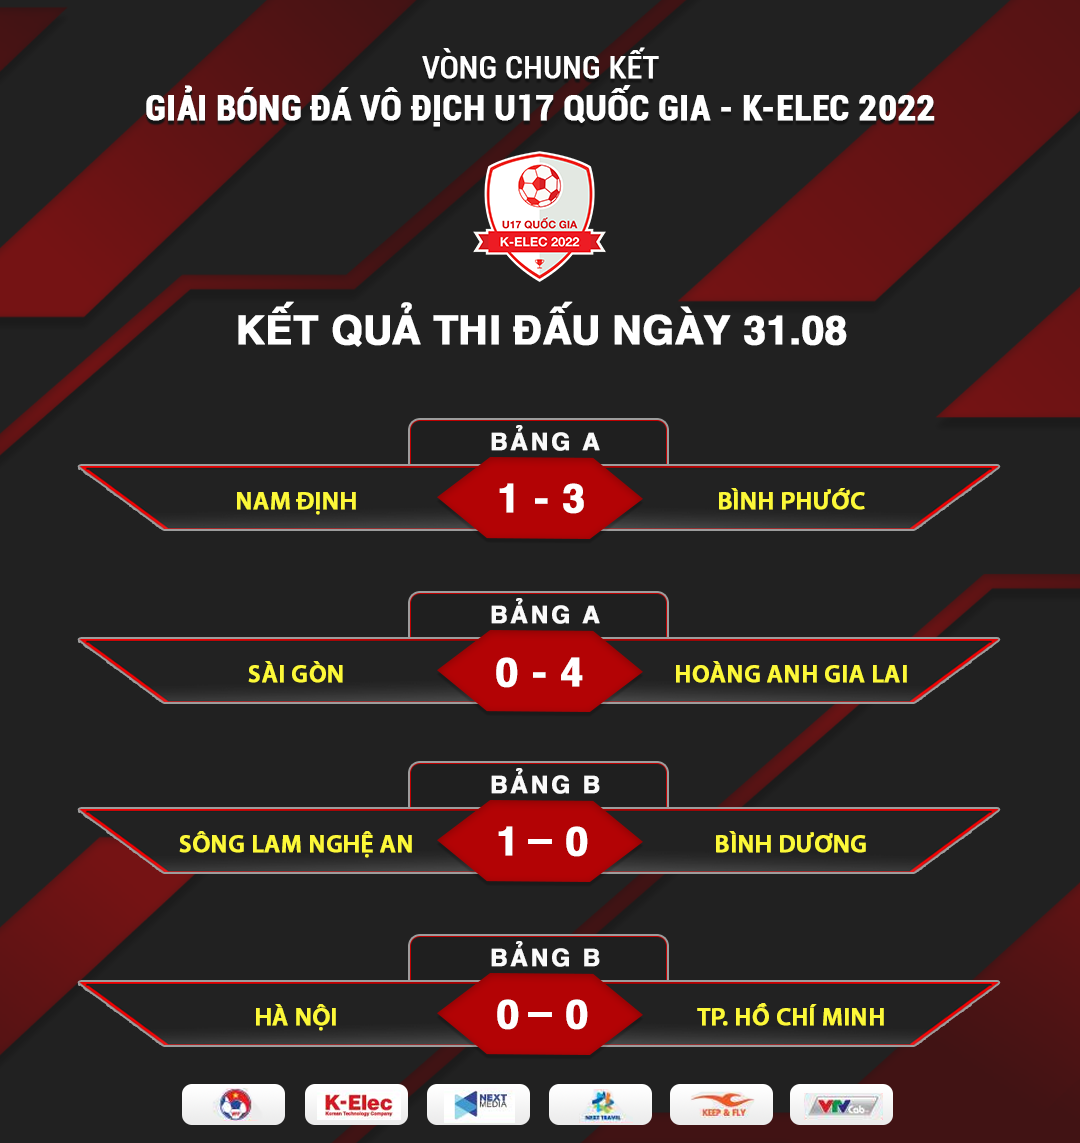 Kết quả thi đấu trận thứ 2 U17 Quốc gia K-Elec 2022 4